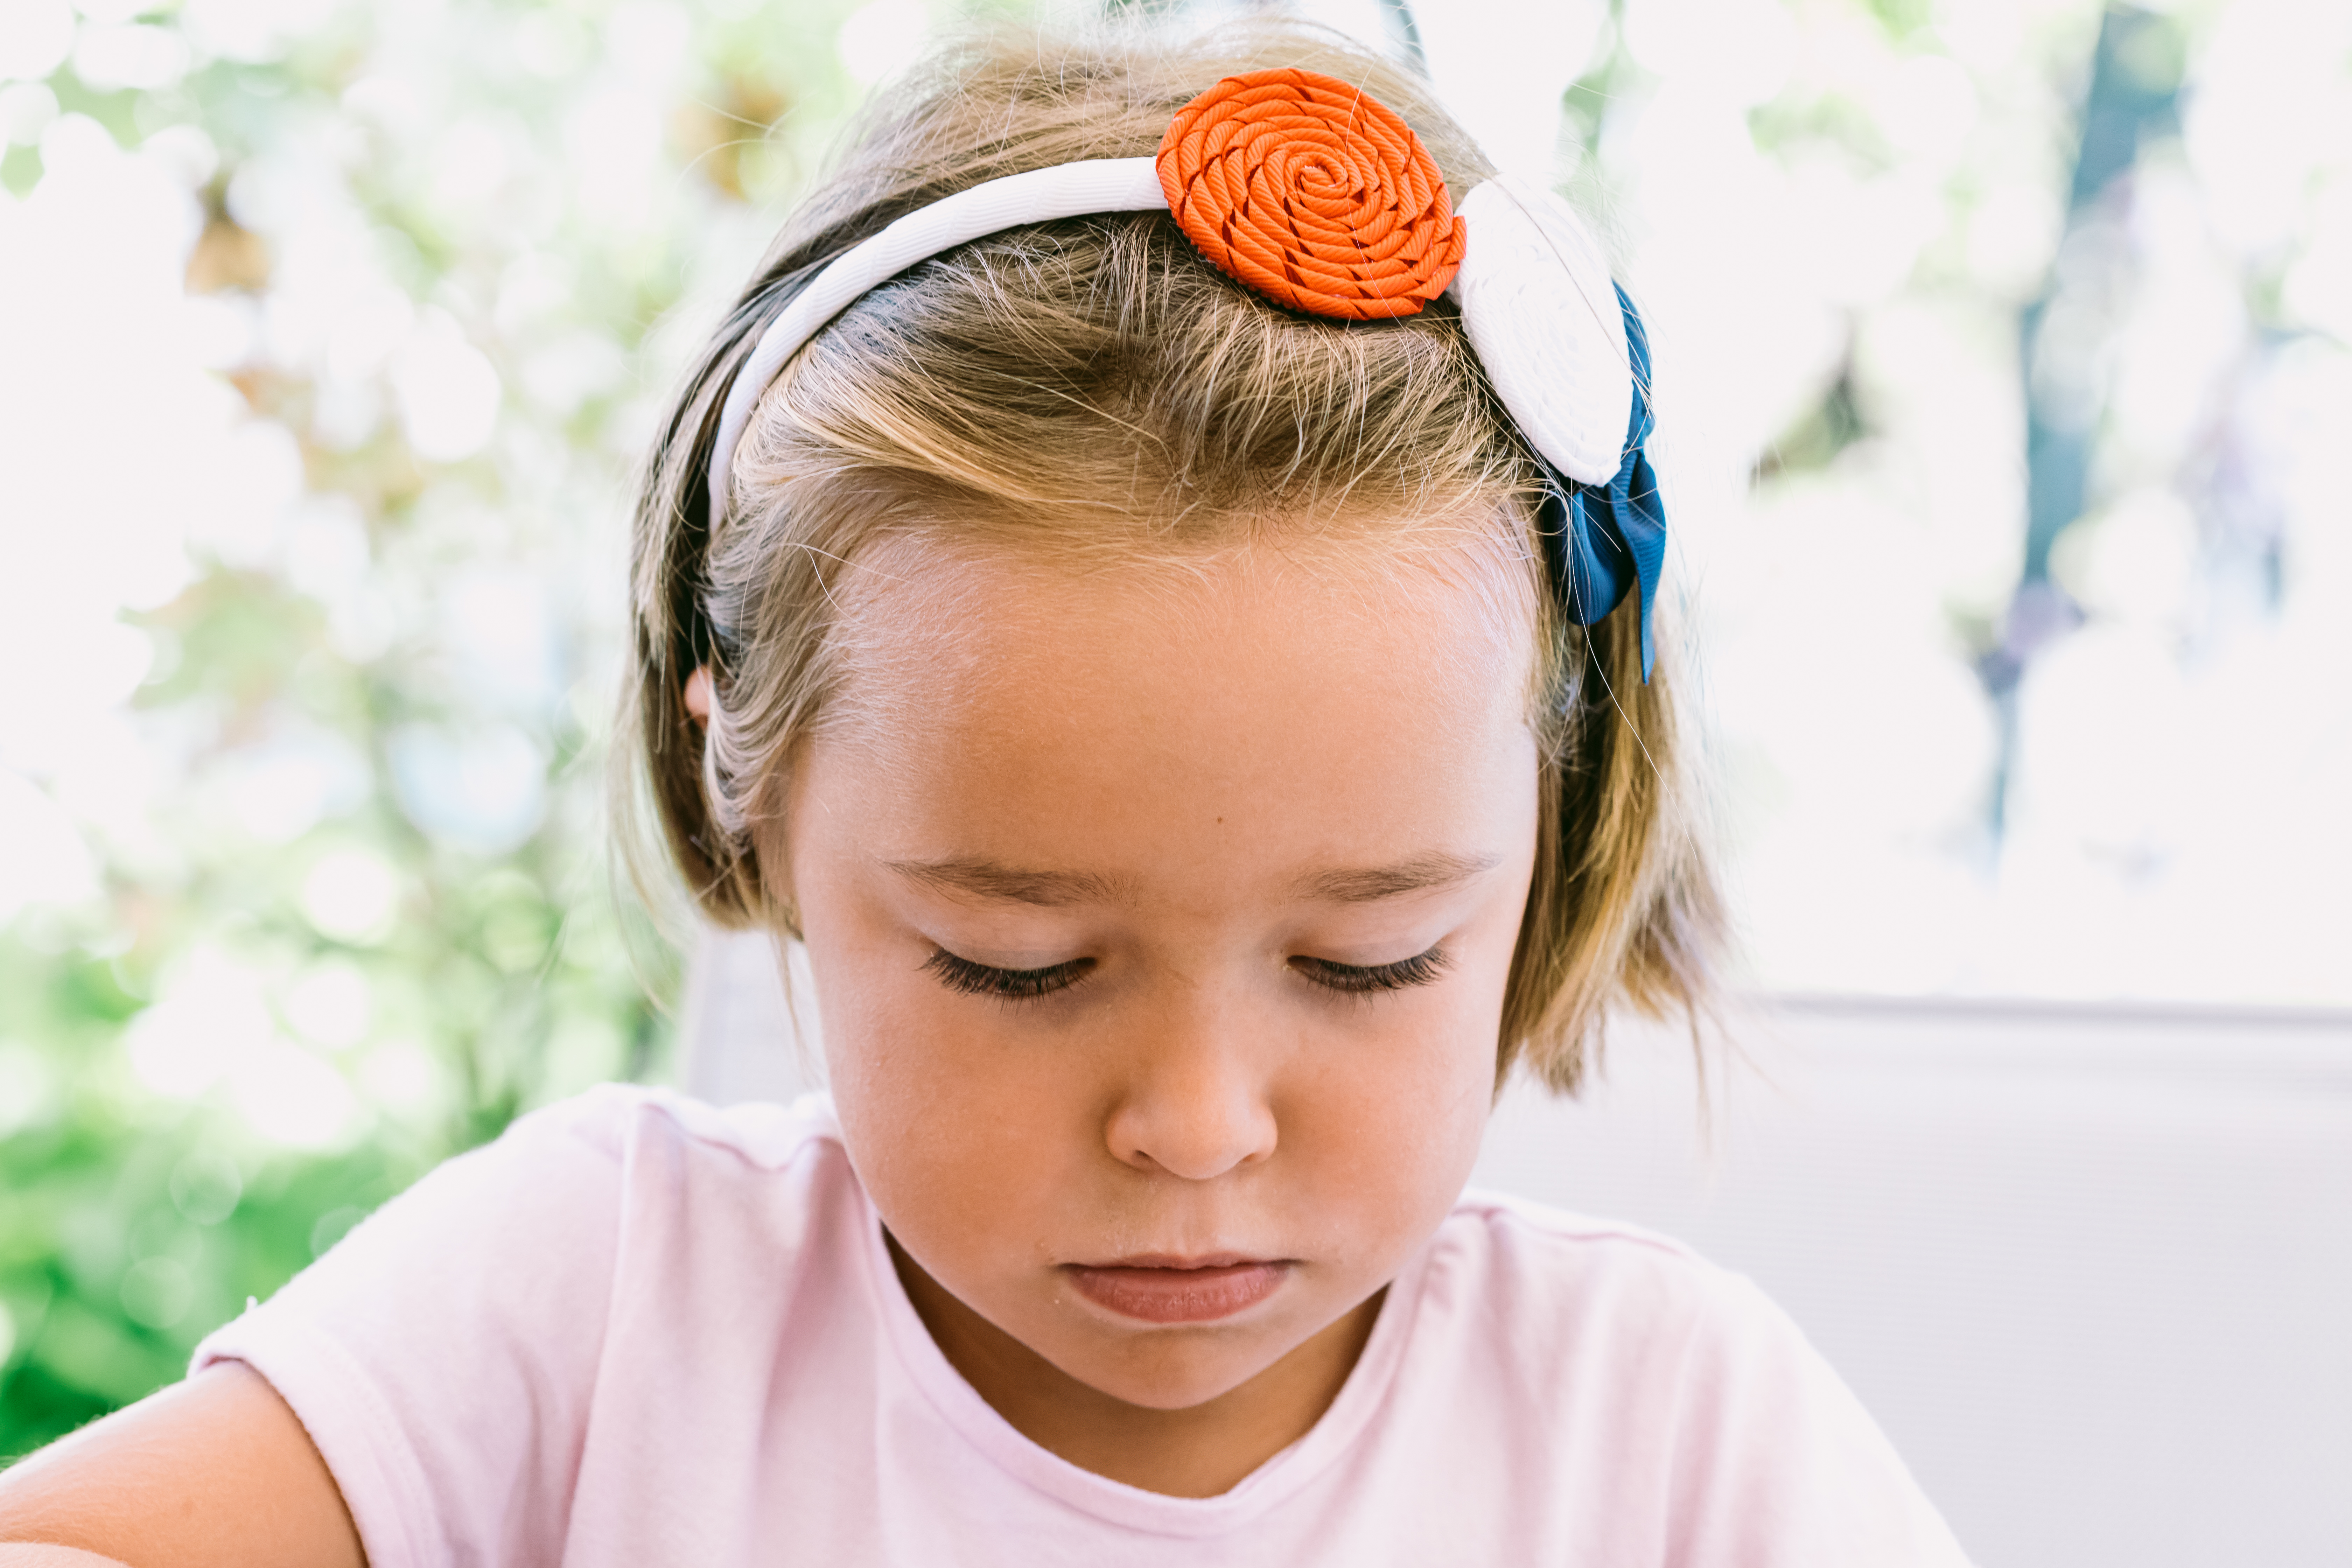 Porträt eines ernsten blondhaarigen kleinen Mädchens, das ein weißes Stirnband mit blauen, roten und weißen Verzierungen trägt, mit einem Garten im Hintergrund | Quelle: Getty Images